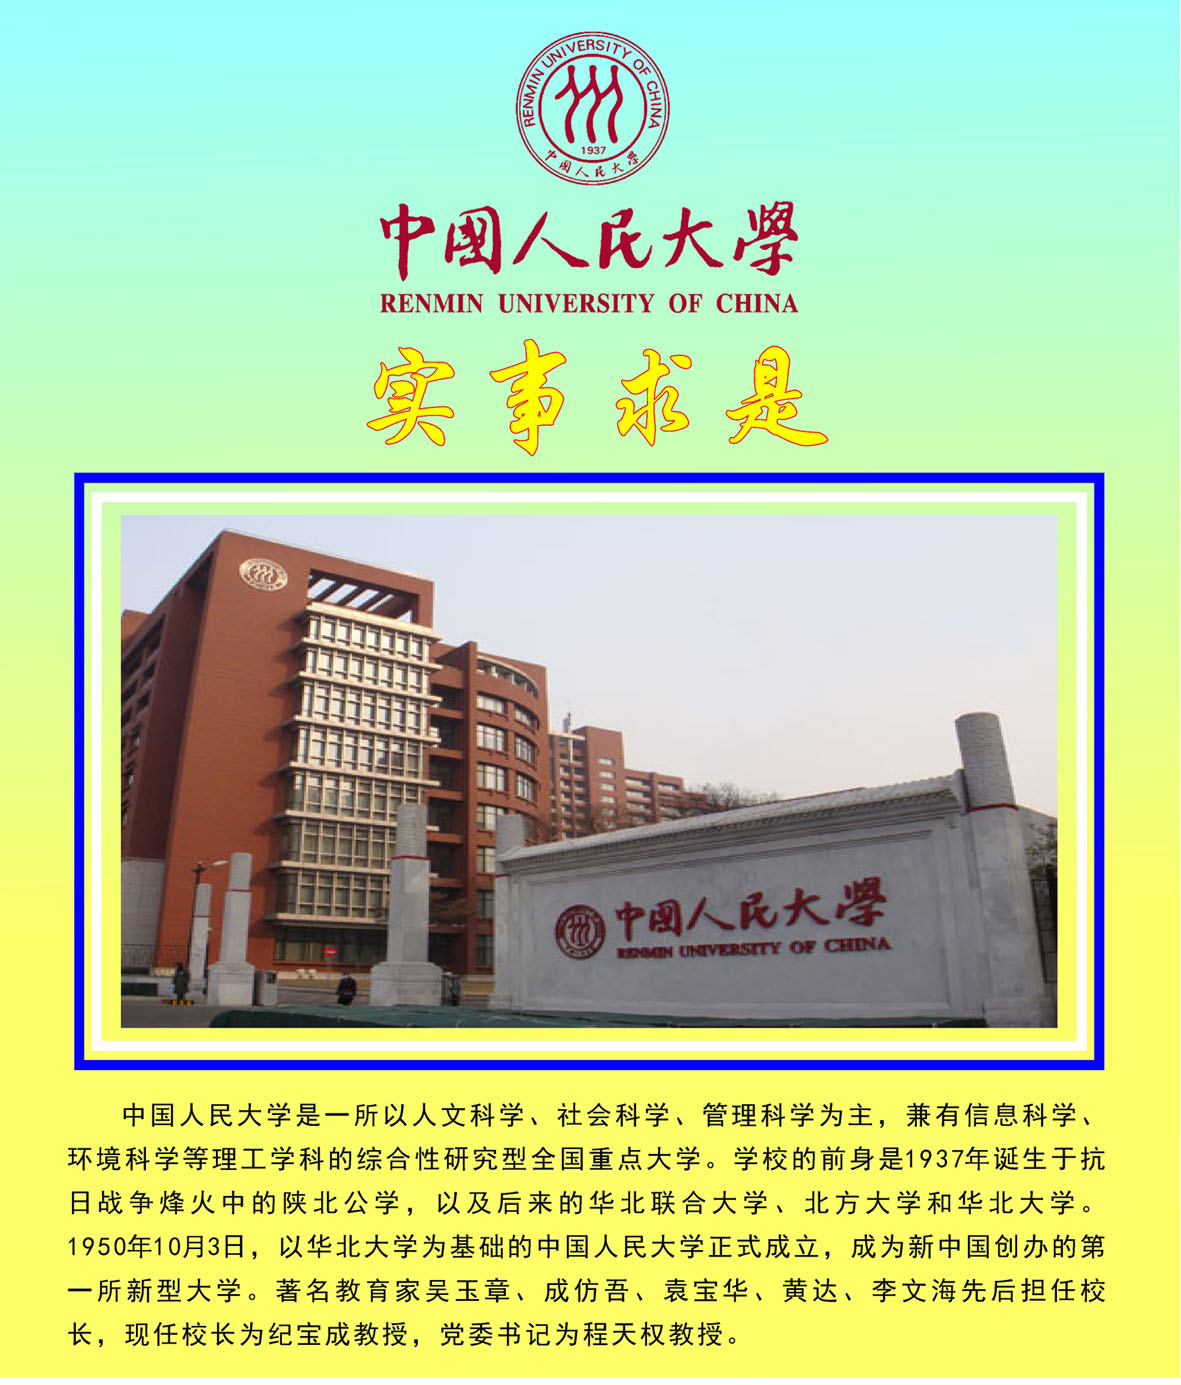 463薄膜贴画海报印制展板喷绘写真195名校简介中国人民大学介绍